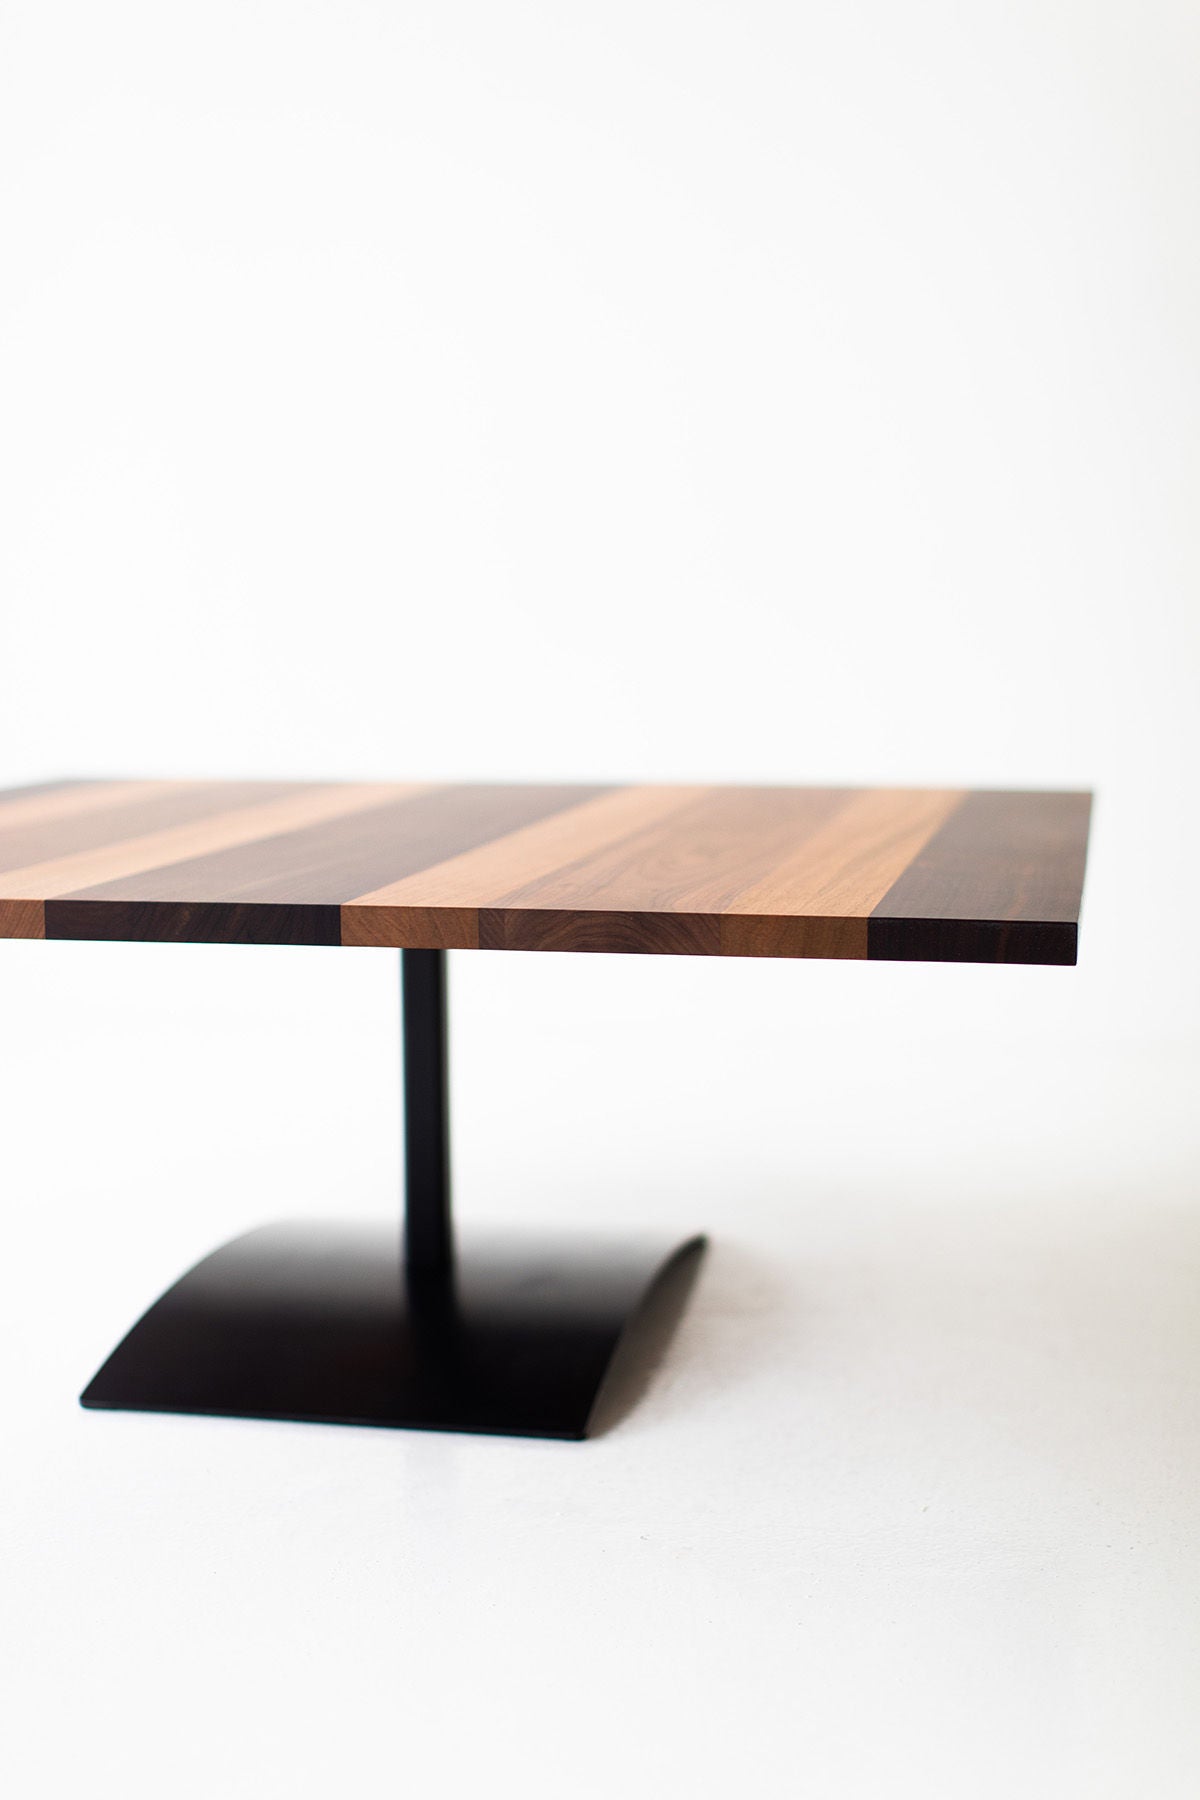 Milo-Baughman-Striped-Top-Coffee-Table-B3933-03